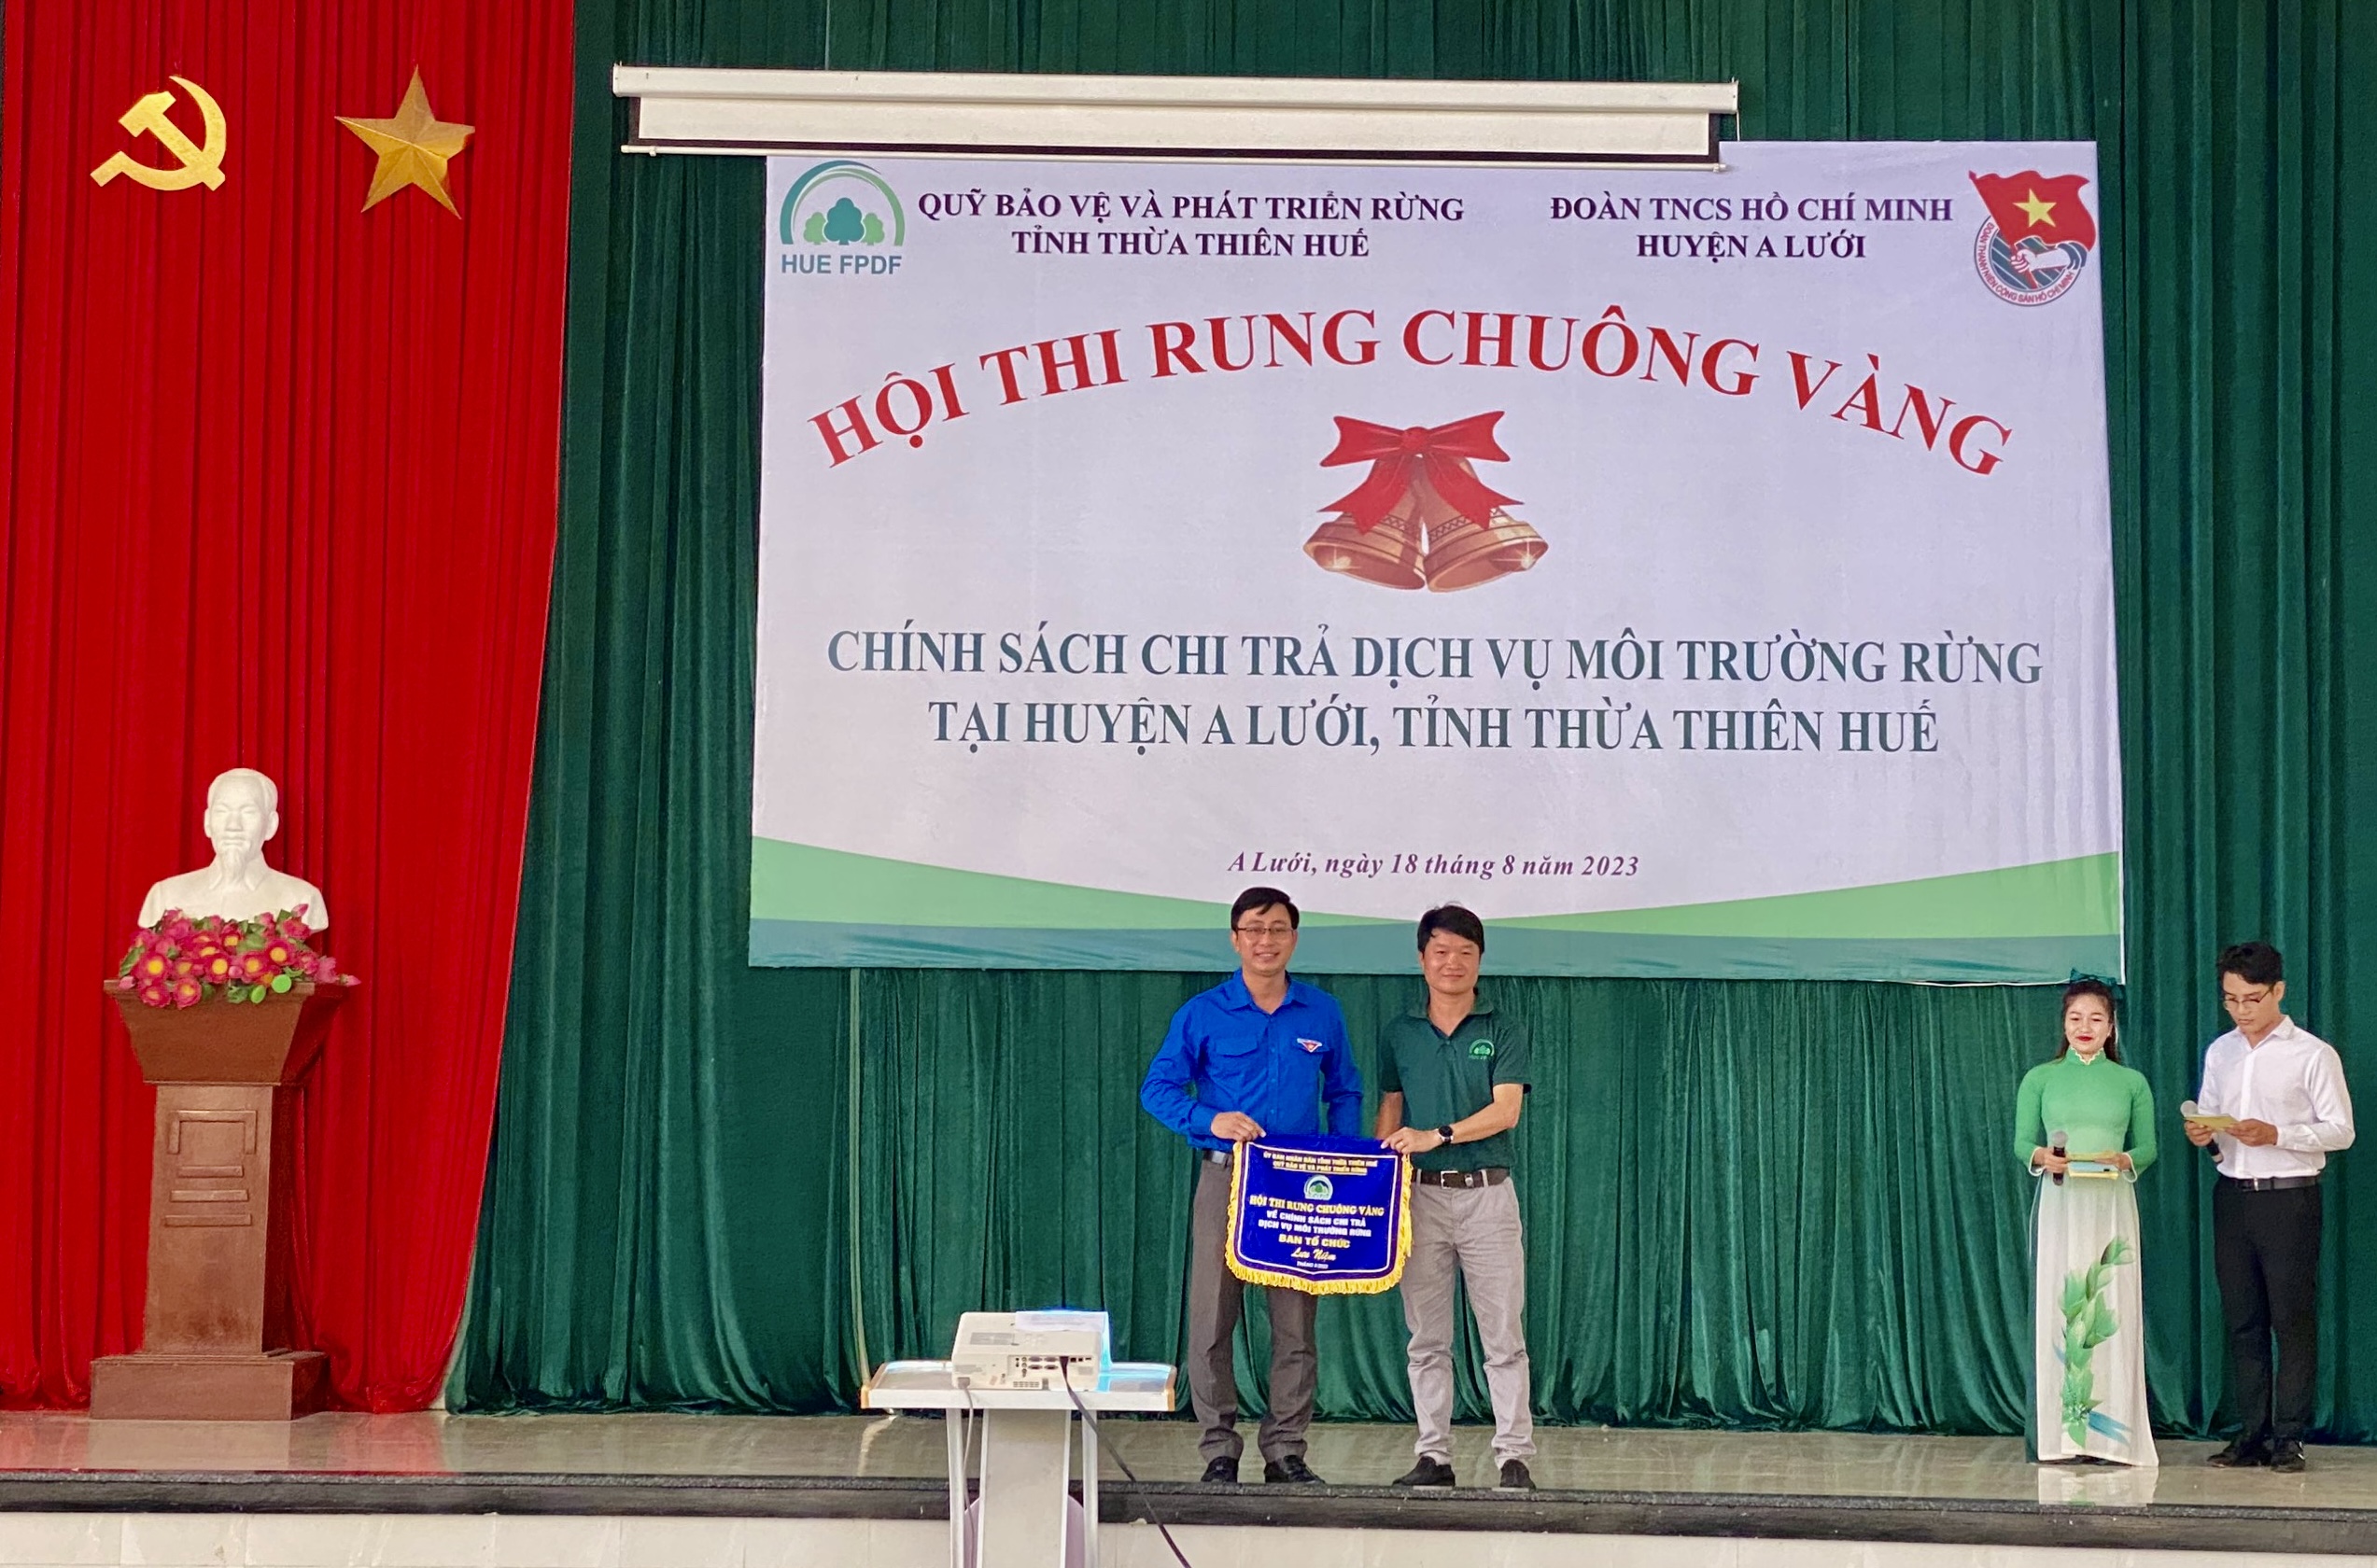 Hội thi “Rung chuông vàng về chính sách chi trả dịch vụ môi trường rừng” tại huyện A Lưới, tỉnh Thừa Thiên Huế.